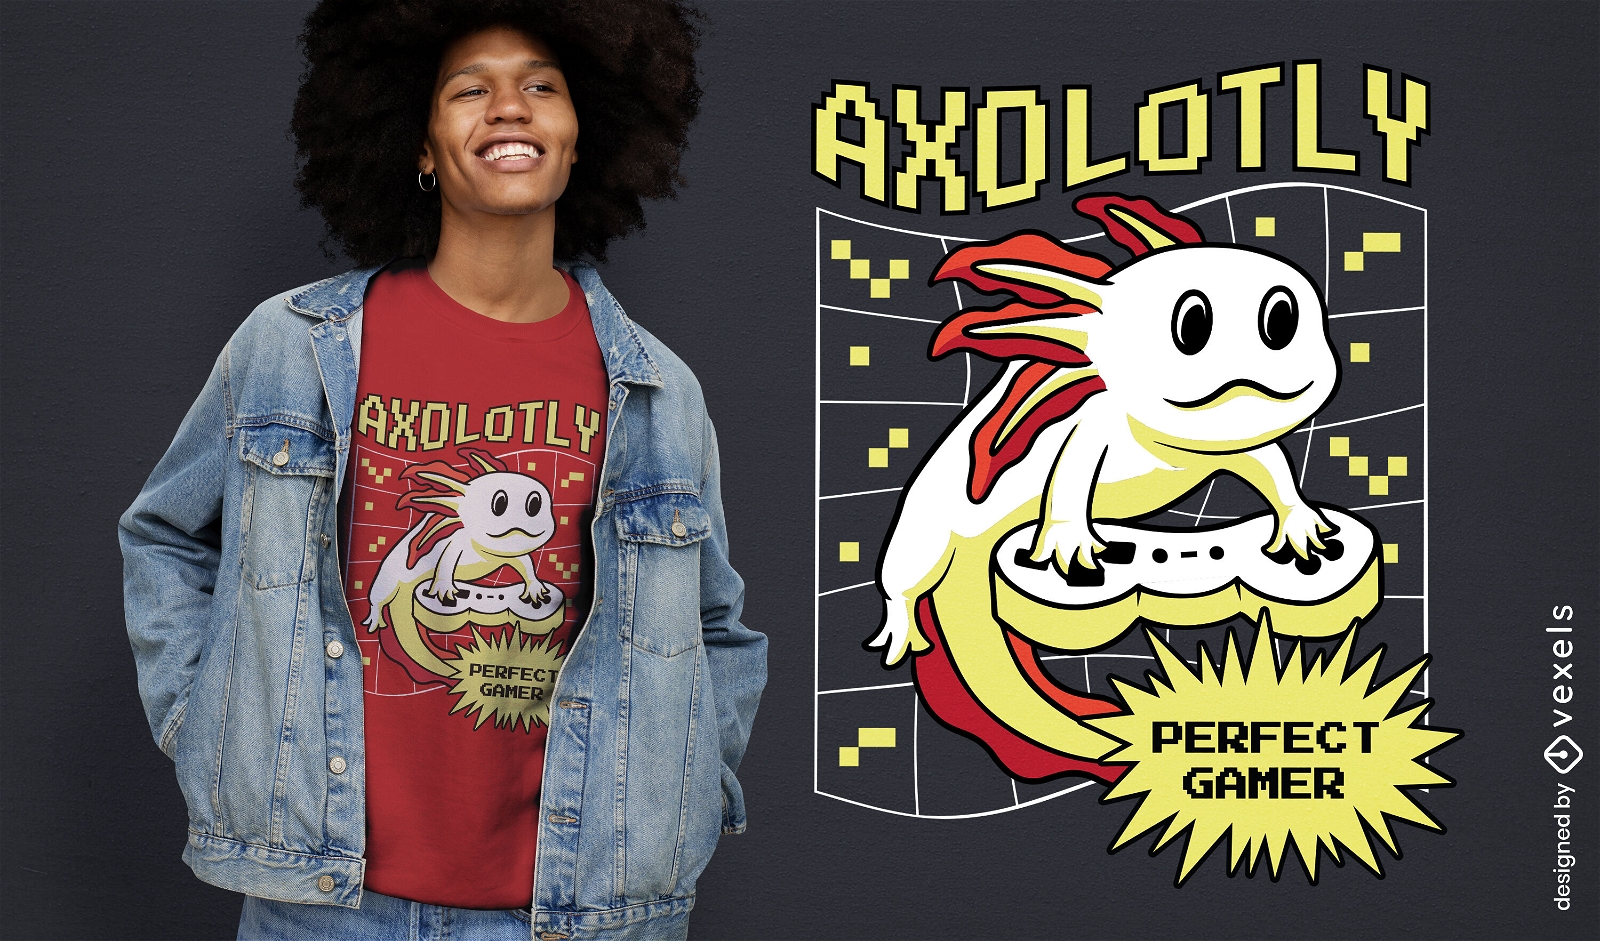 Axolotl-Gamer-T-Shirt-Design